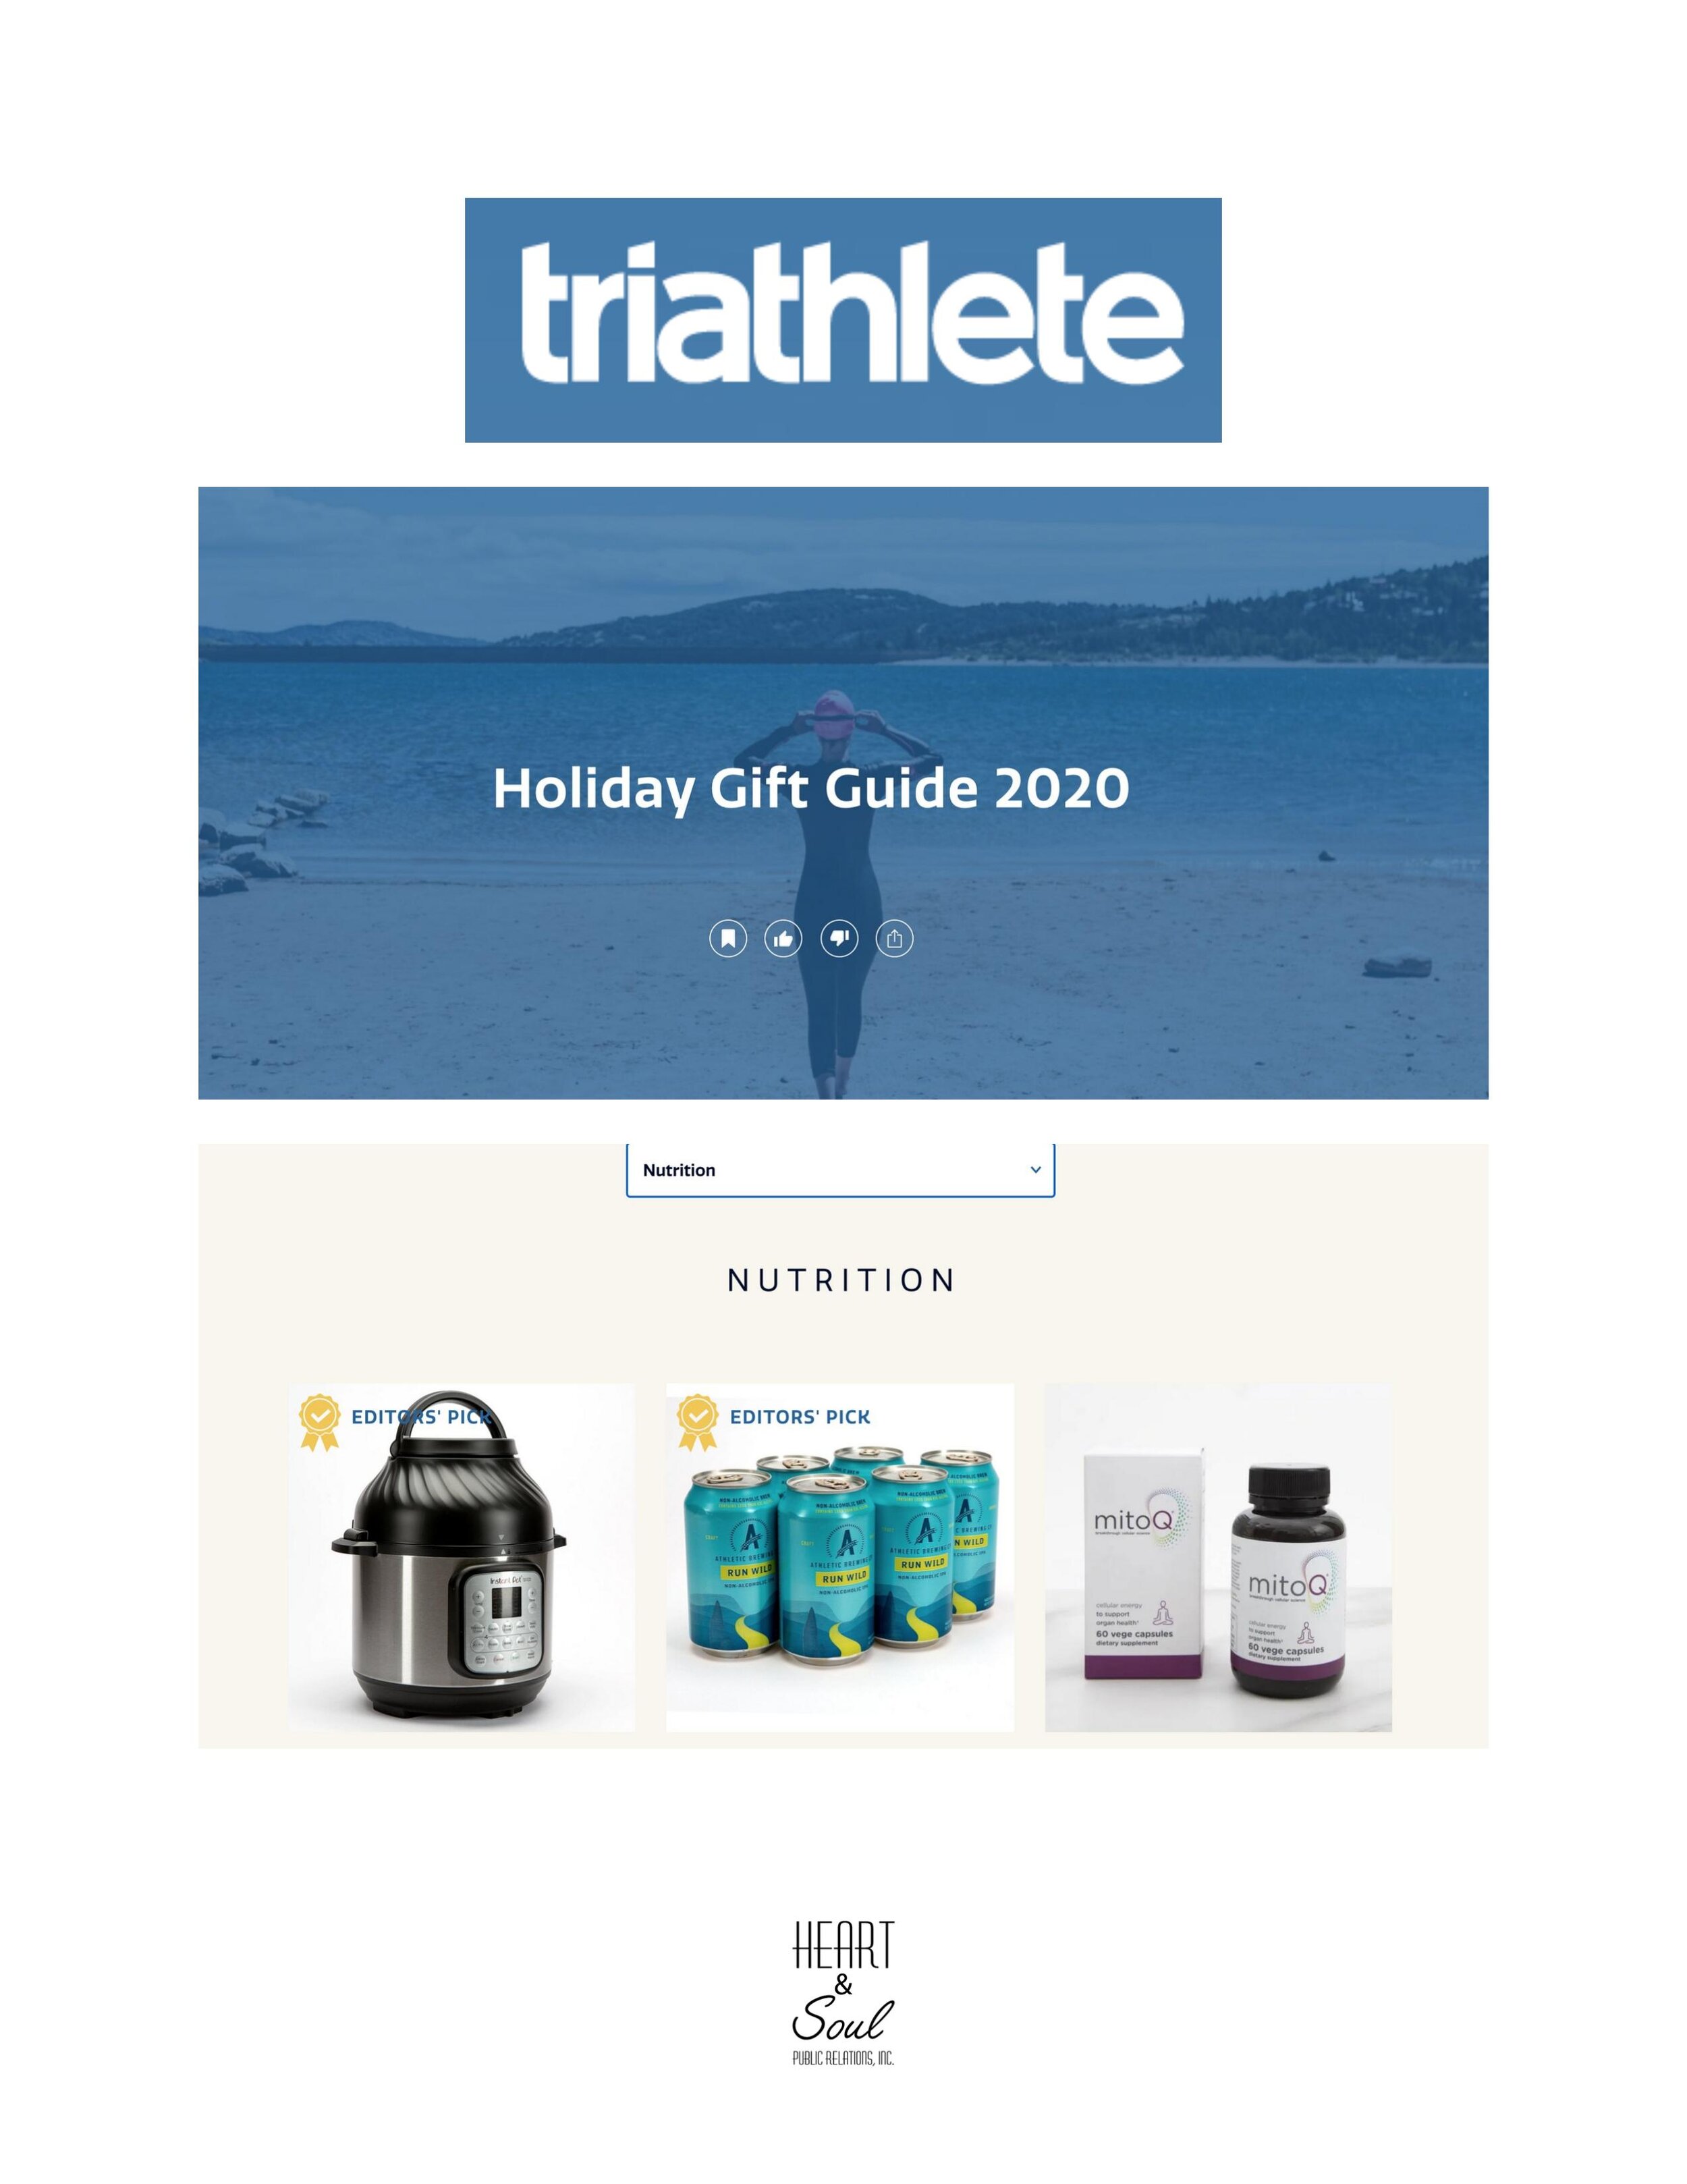 2020_11_18_Triathlete_Holiday Gift Guide 2020-1.jpg